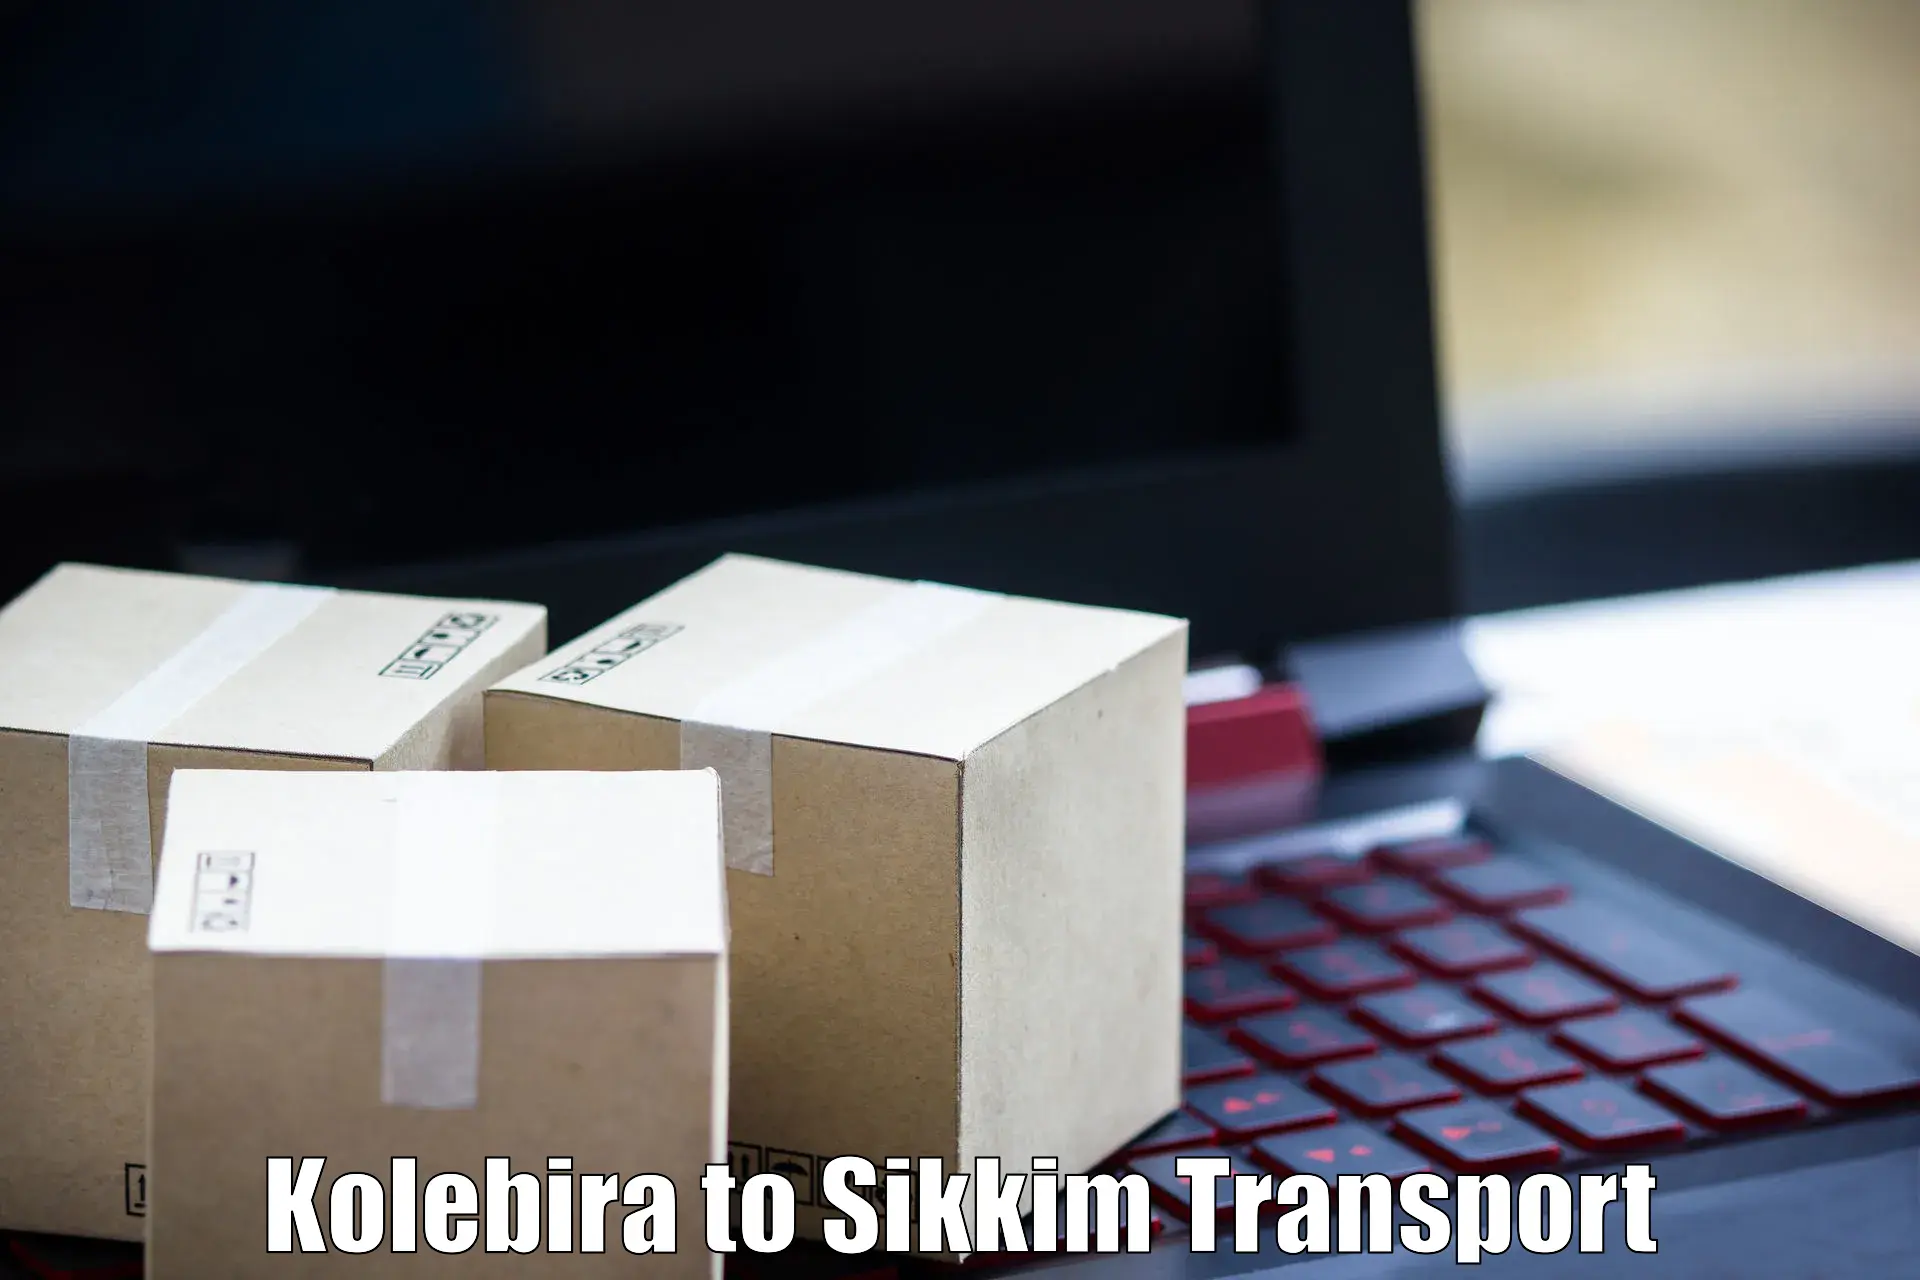 All India transport service Kolebira to Mangan